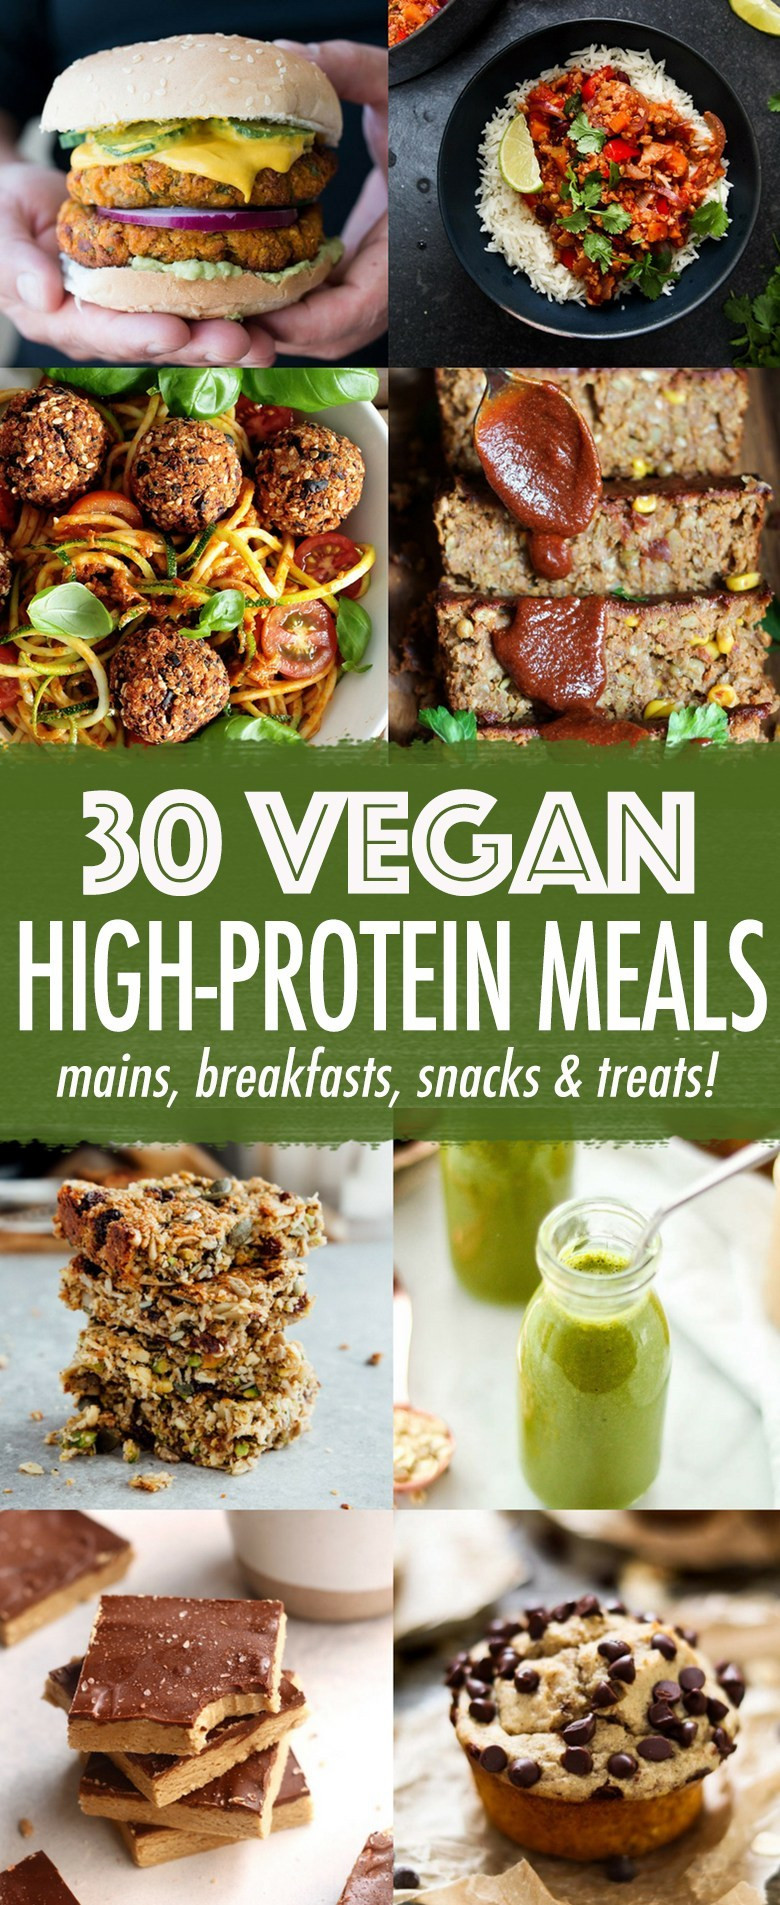 High Protein Vegetarian Foods
 30 High protein Vegan Meals Wallflower Kitchen